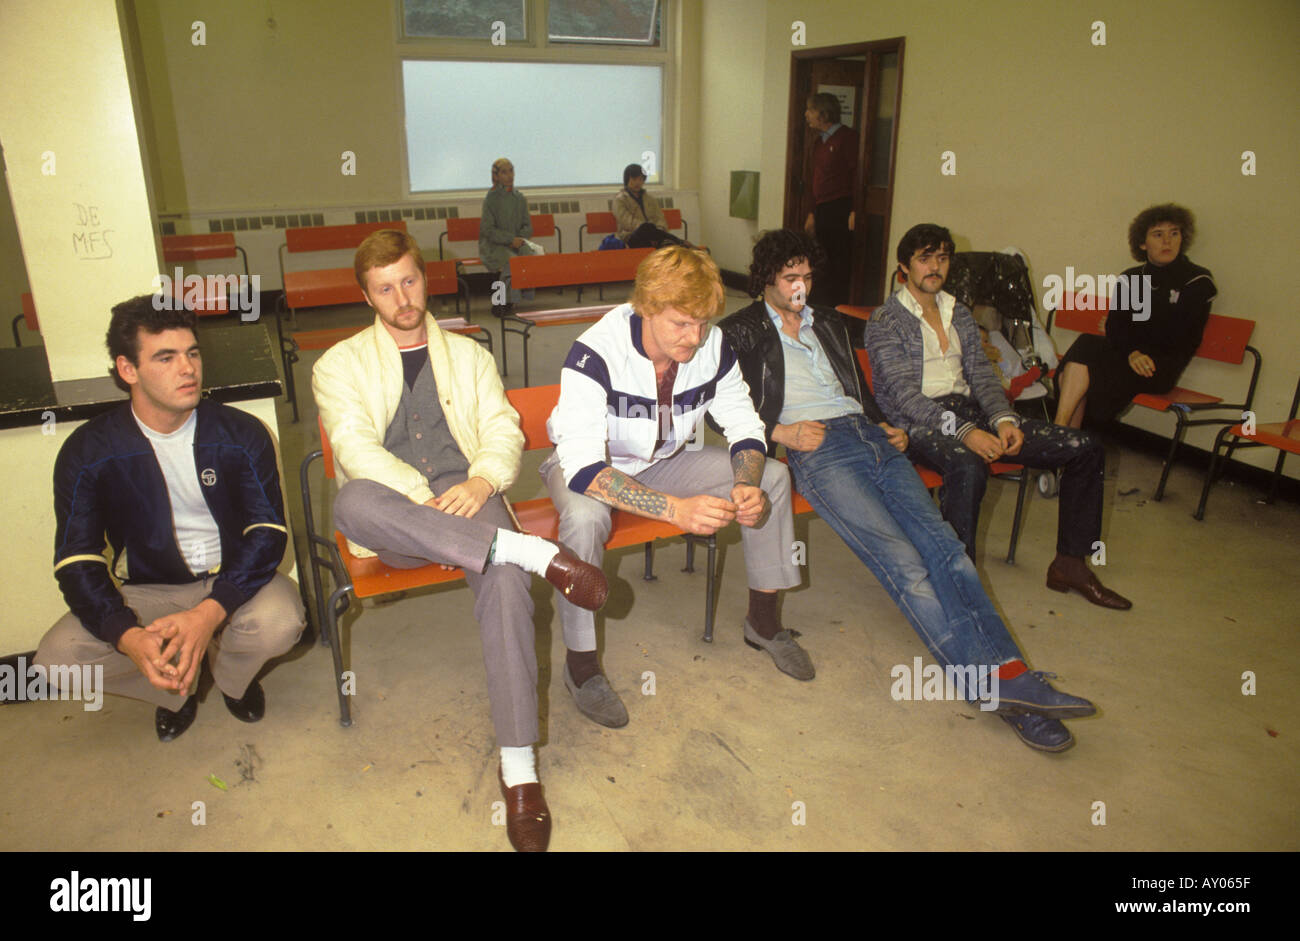 Chômeurs dans un bureau de change du travail du Centre de l'emploi, au sud de Londres Angleterre, dans les années 1980. Ils attendent d'être interviewés 1983 UK HOMER SYKES Banque D'Images